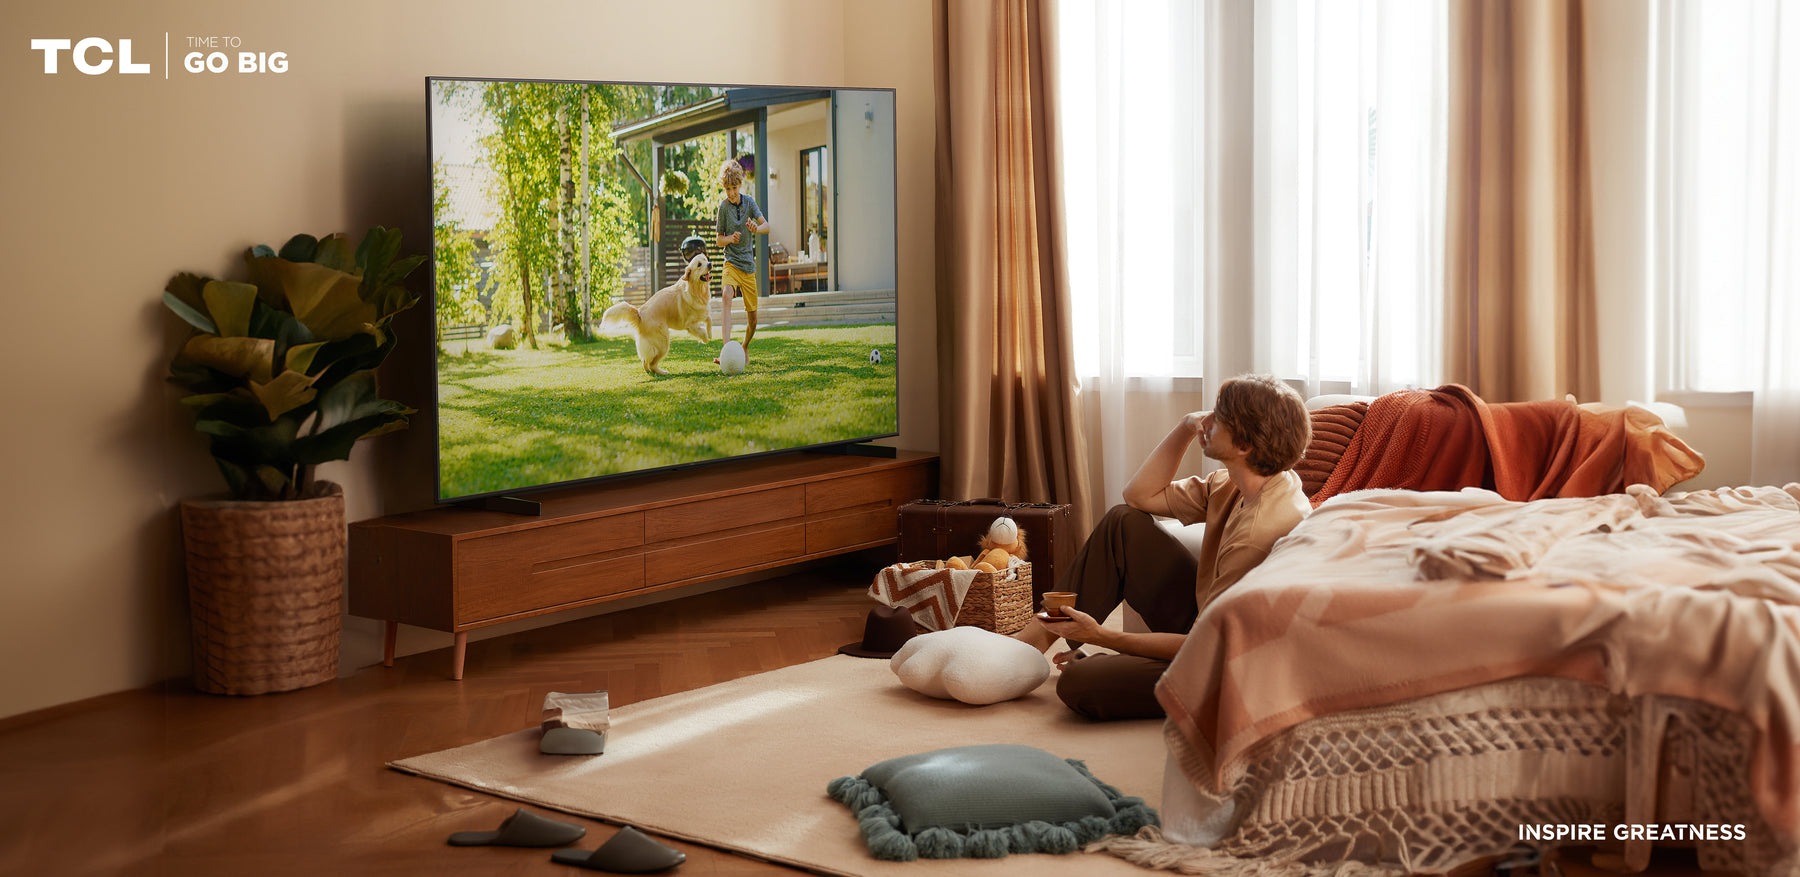 #ConsejosTCL: Por qué un televisor de pantalla grande es la elección perfecta para tu hogar